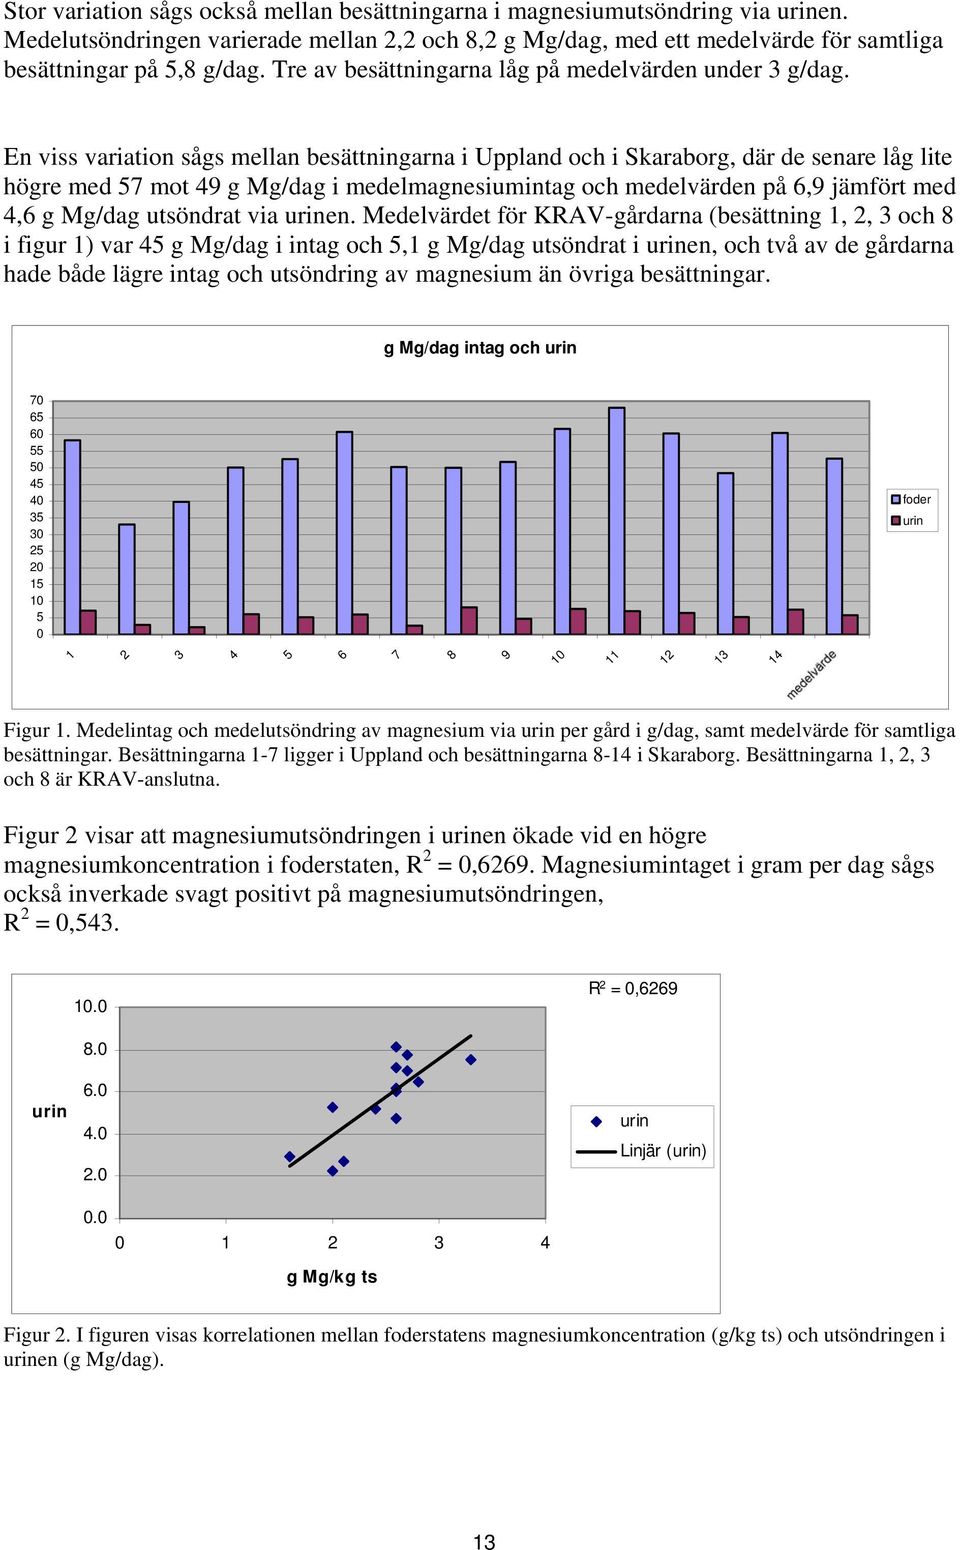 En viss variation sågs mellan besättningarna i Uppland och i Skaraborg, där de senare låg lite högre med 57 mot 49 g Mg/dag i medelmagnesiumintag och medelvärden på 6,9 jämfört med 4,6 g Mg/dag